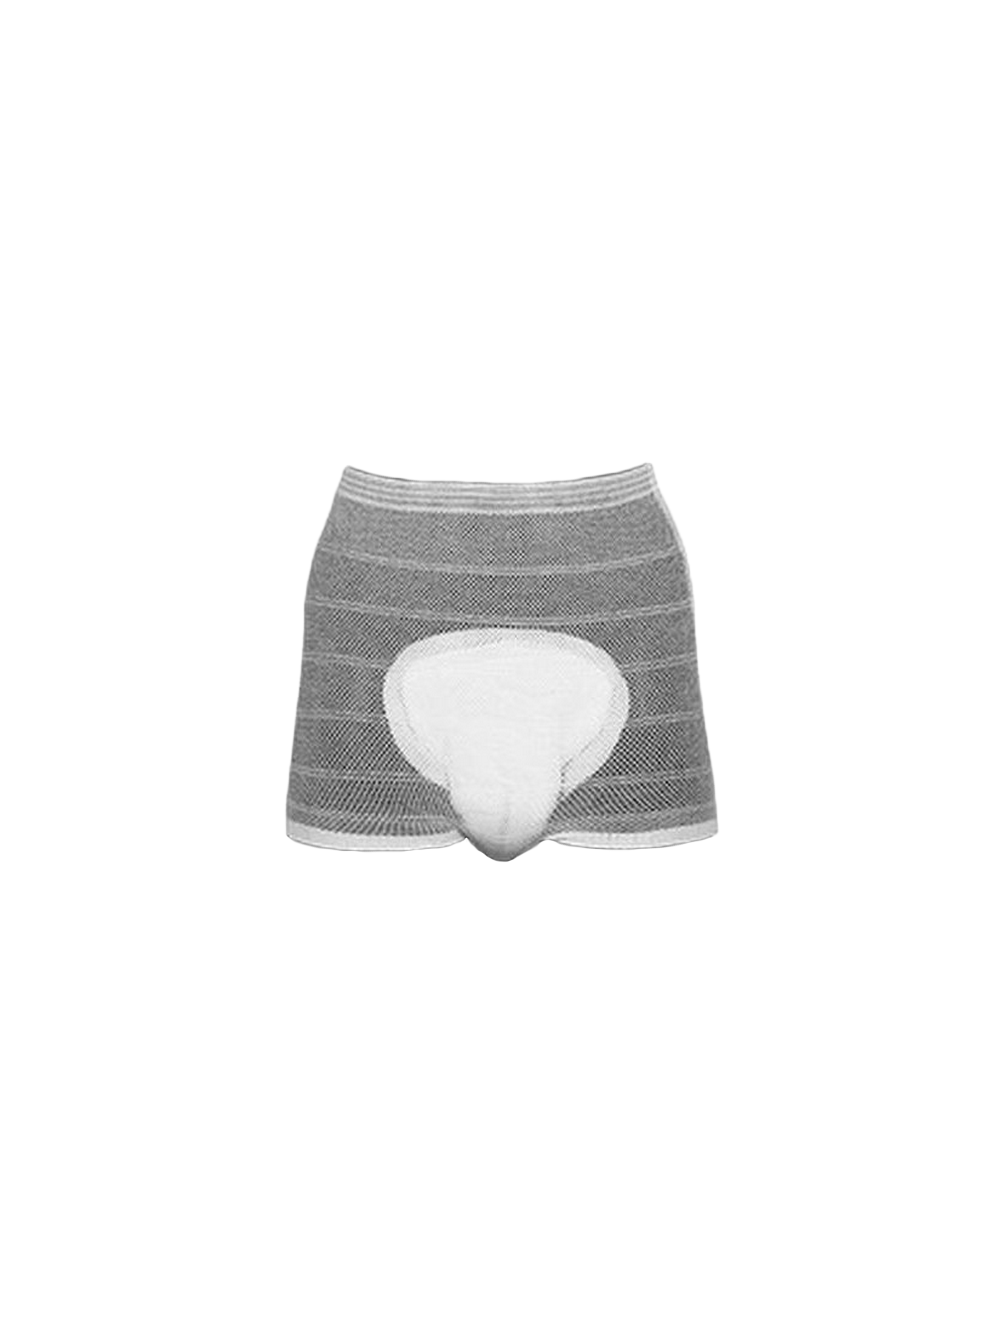 Abri-Fix Abena Knit Pant Mesh Underwear